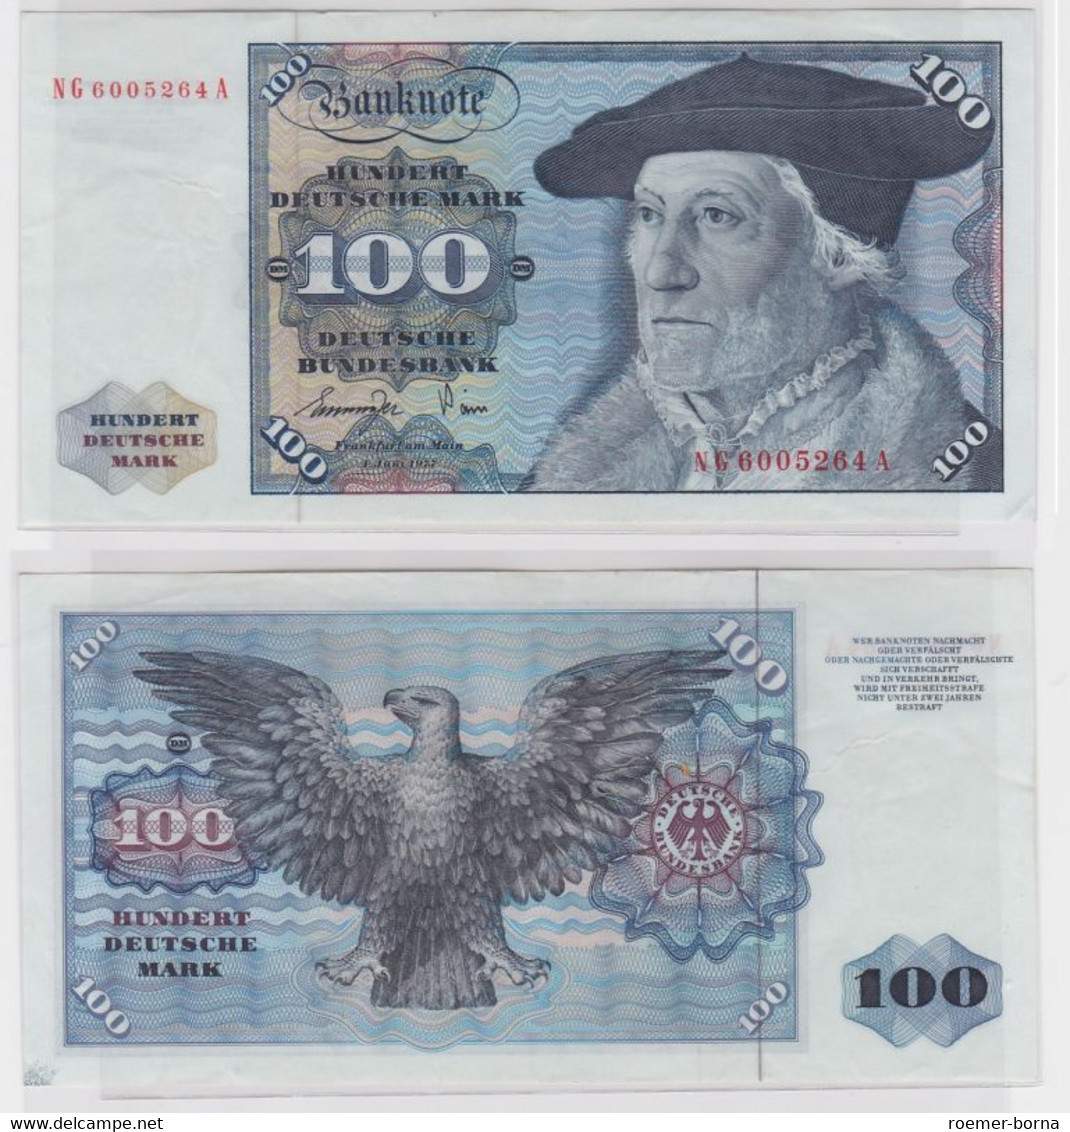 T145383 Banknote 100 DM Deutsche Mark Ro 278a Schein 1.Juni 1977 KN NG 6005264 A - 100 Deutsche Mark